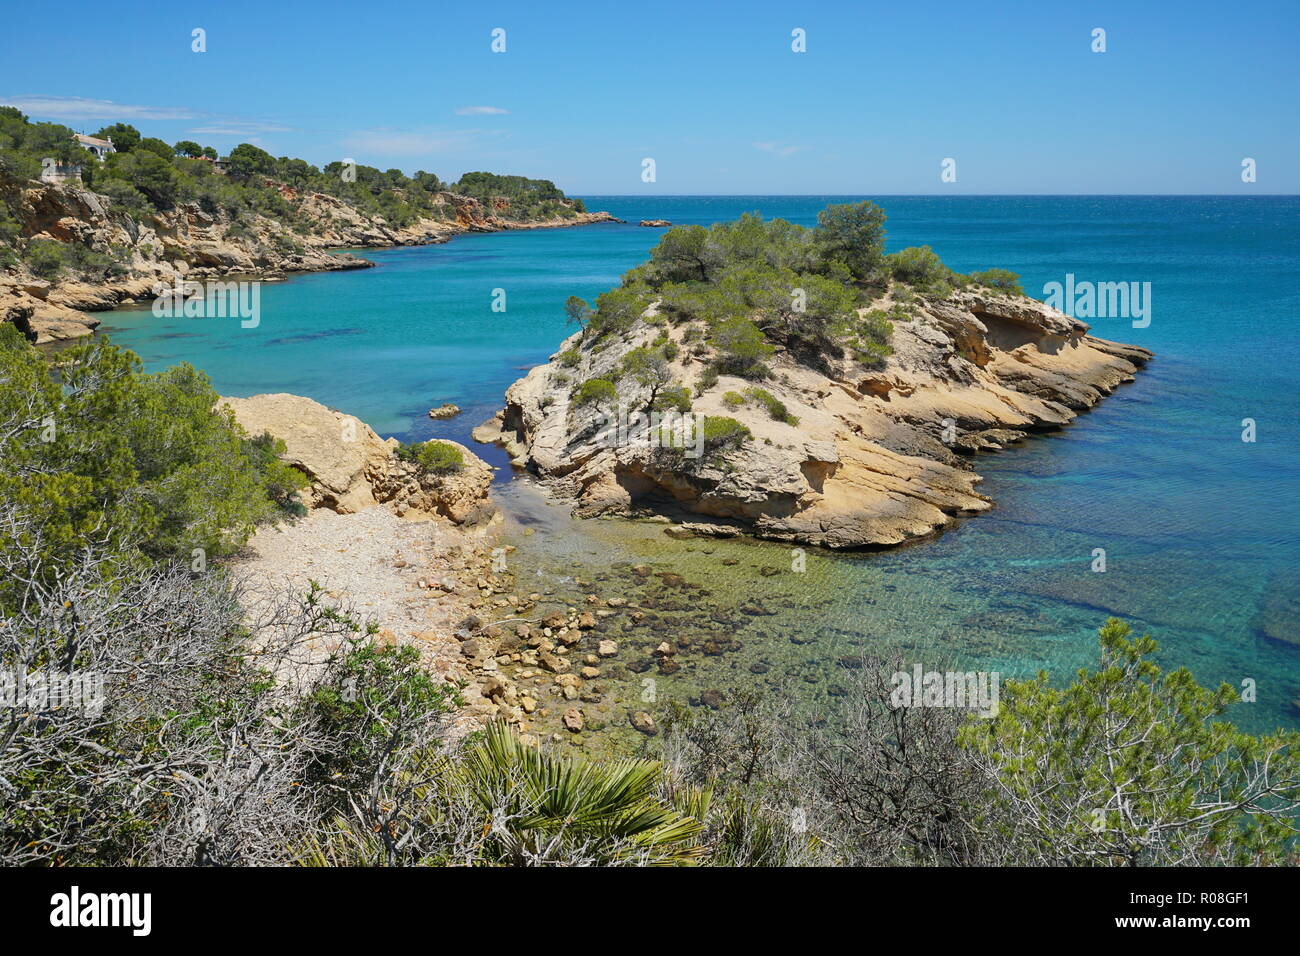 Spagna Costa Dorada Costa rocciosa con un isolotto, l'Illot, mare Mediterraneo, Catalogna, L'Ametlla de Mar, Tarragona Foto Stock